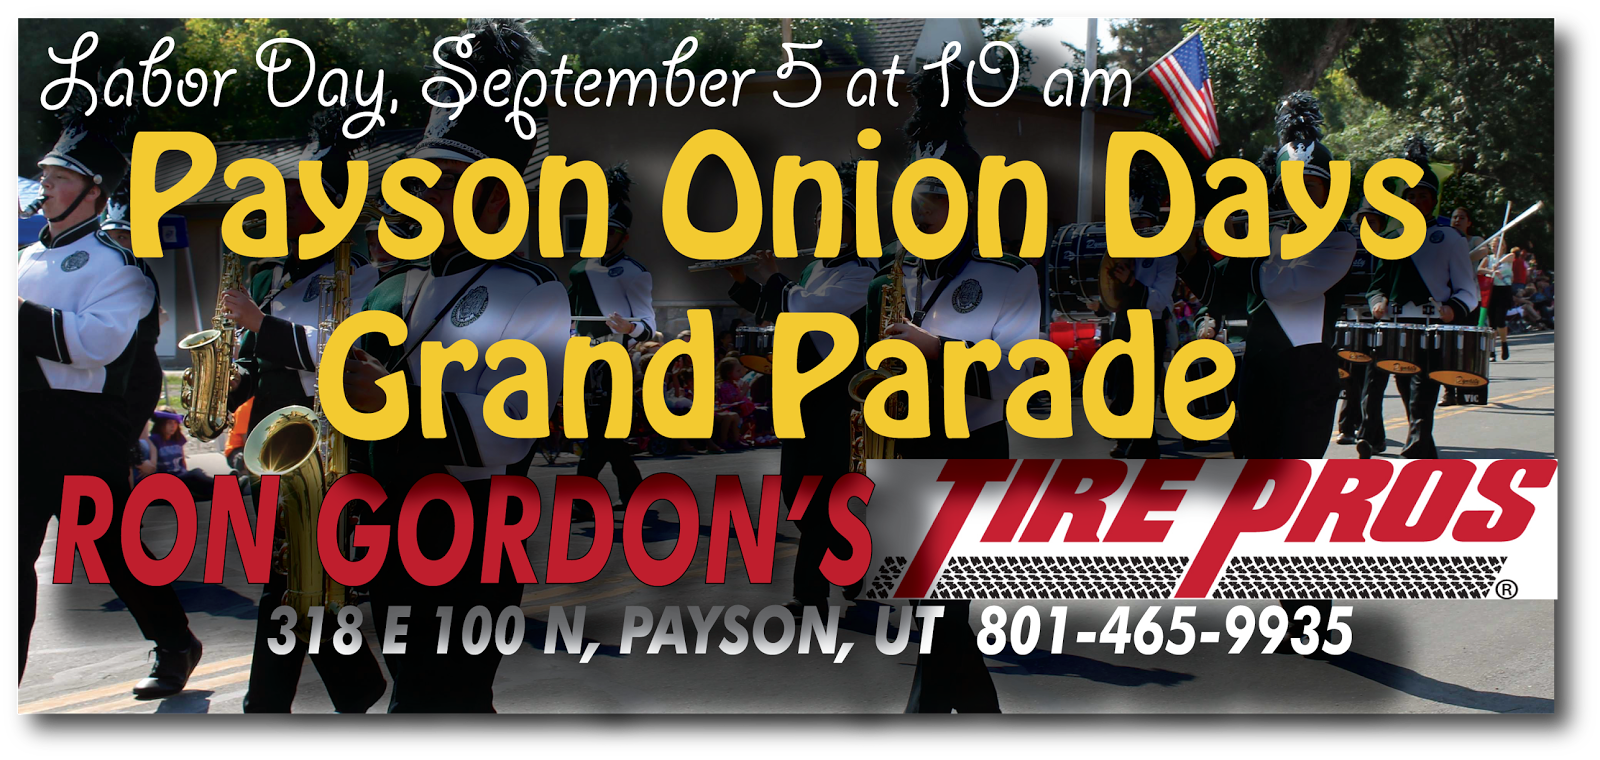 The Payson Chronicle Celebrating Onion Days Grand Parade Ron Gordon